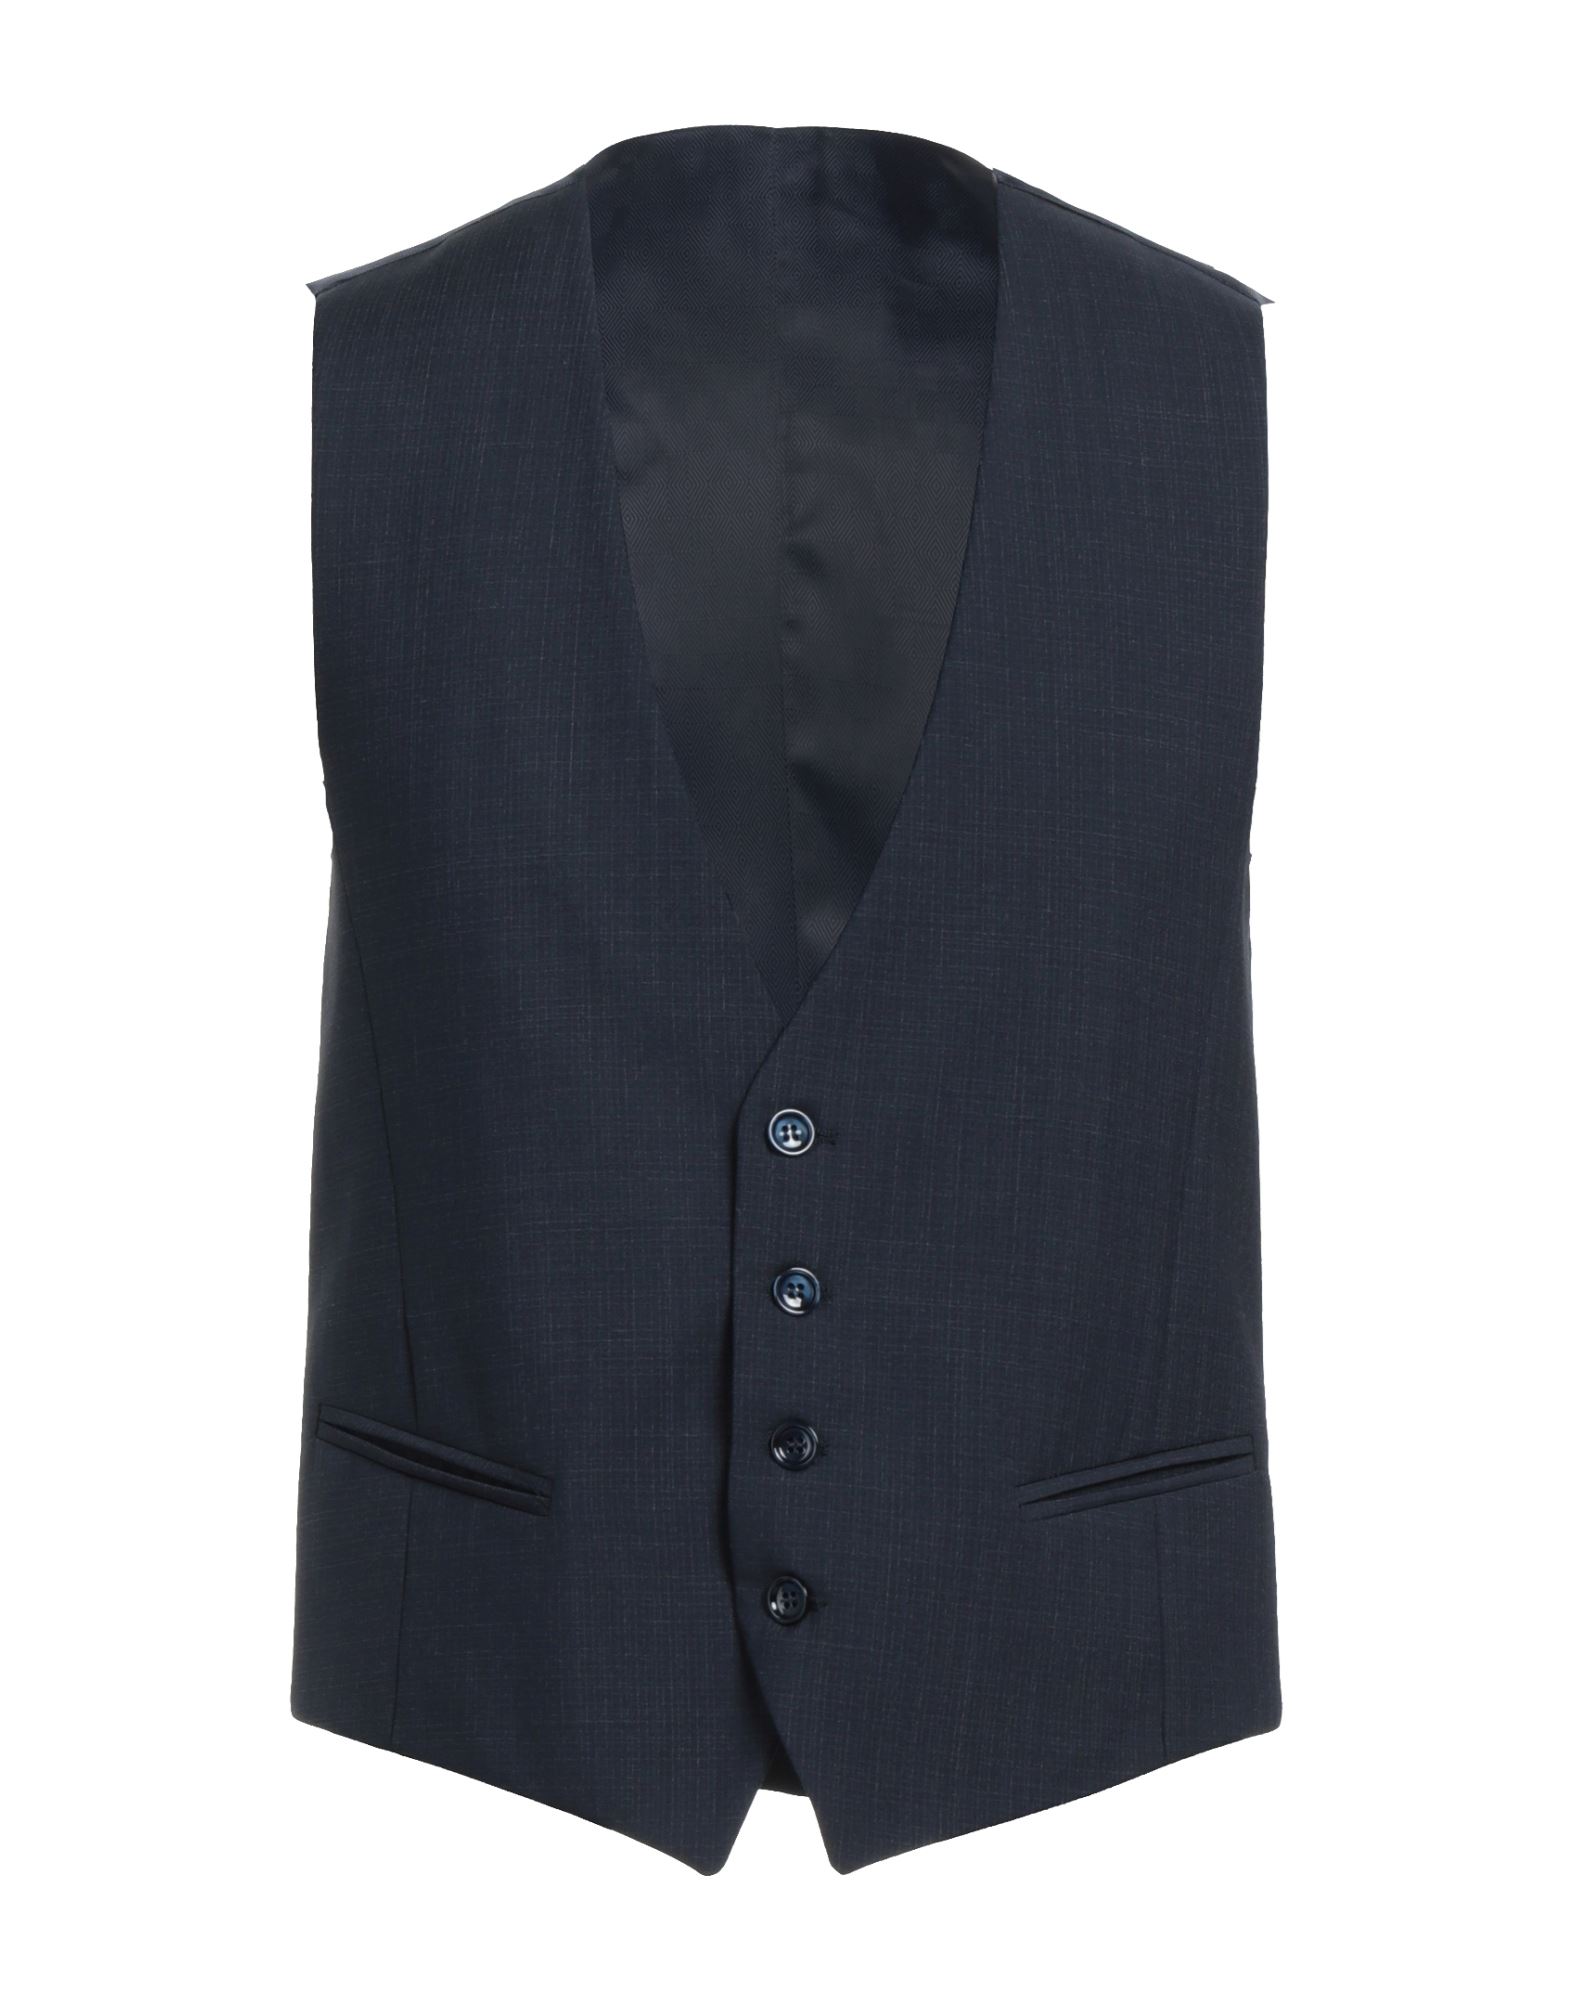 Havana & Co. Man Tailored Vest Midnight Blue Size 40 Virgin Wool